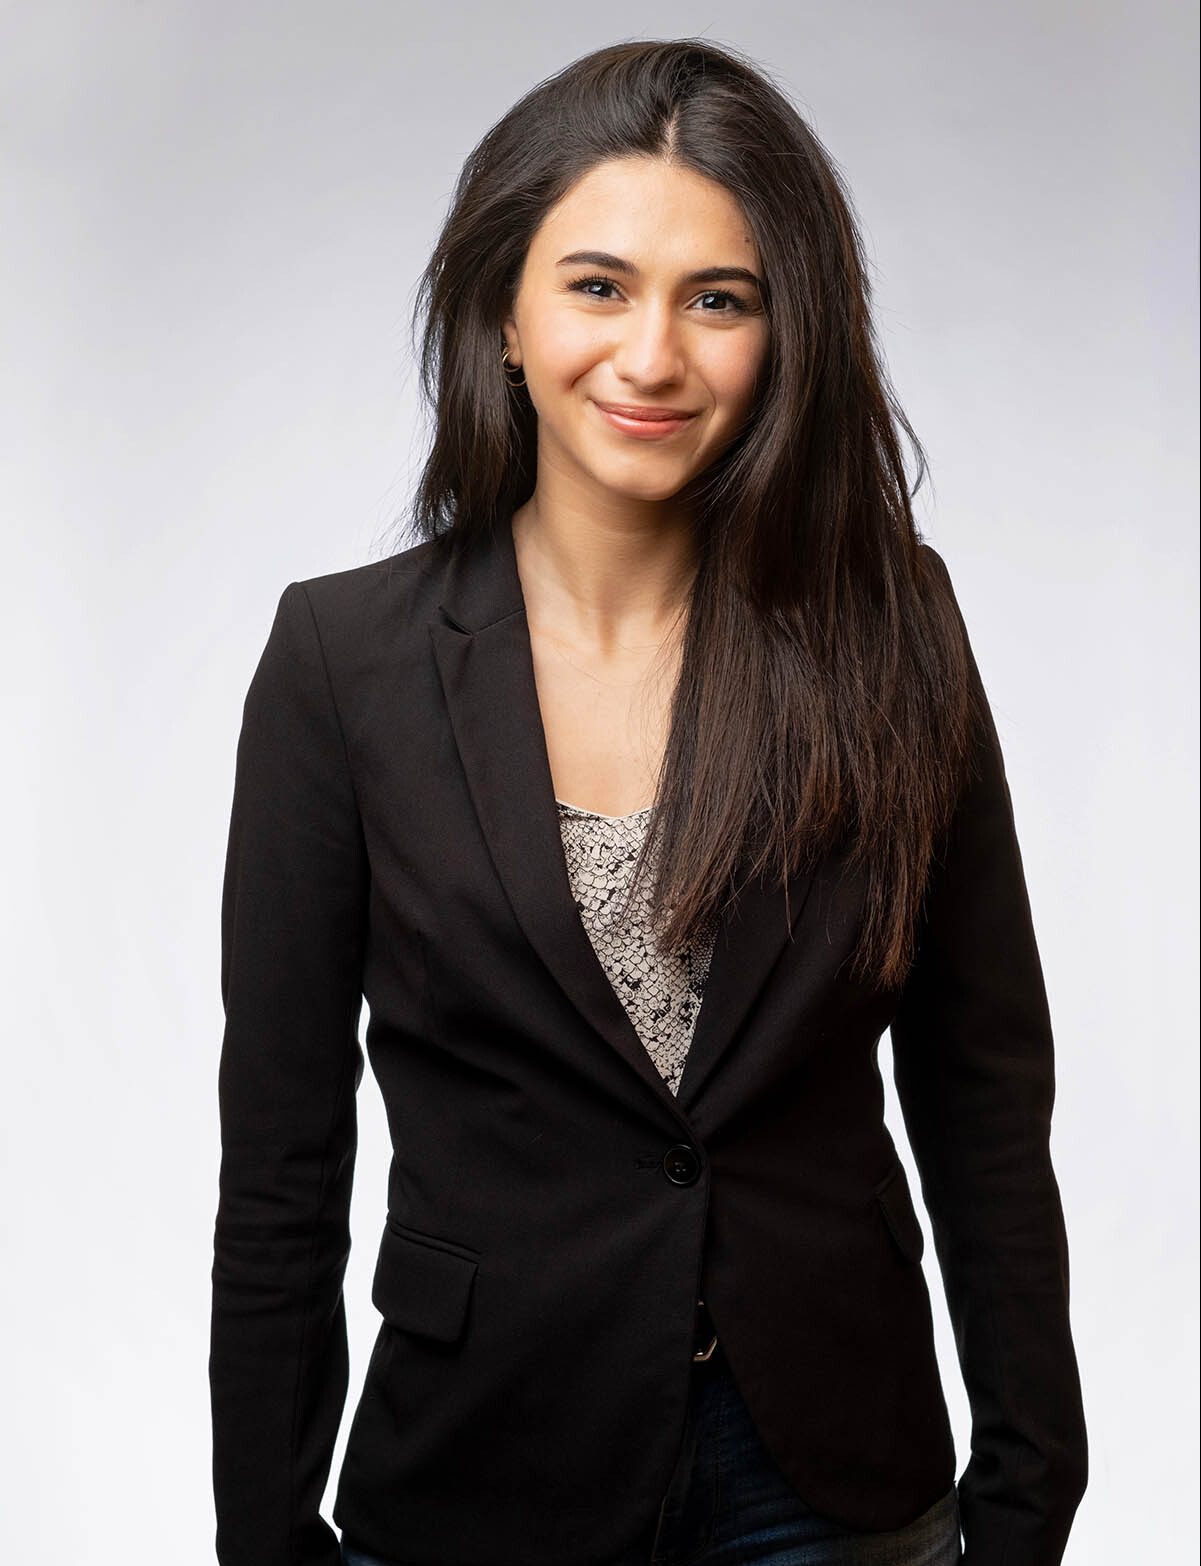 Lizette Poulos, Lawyer Vancouver, LK Law